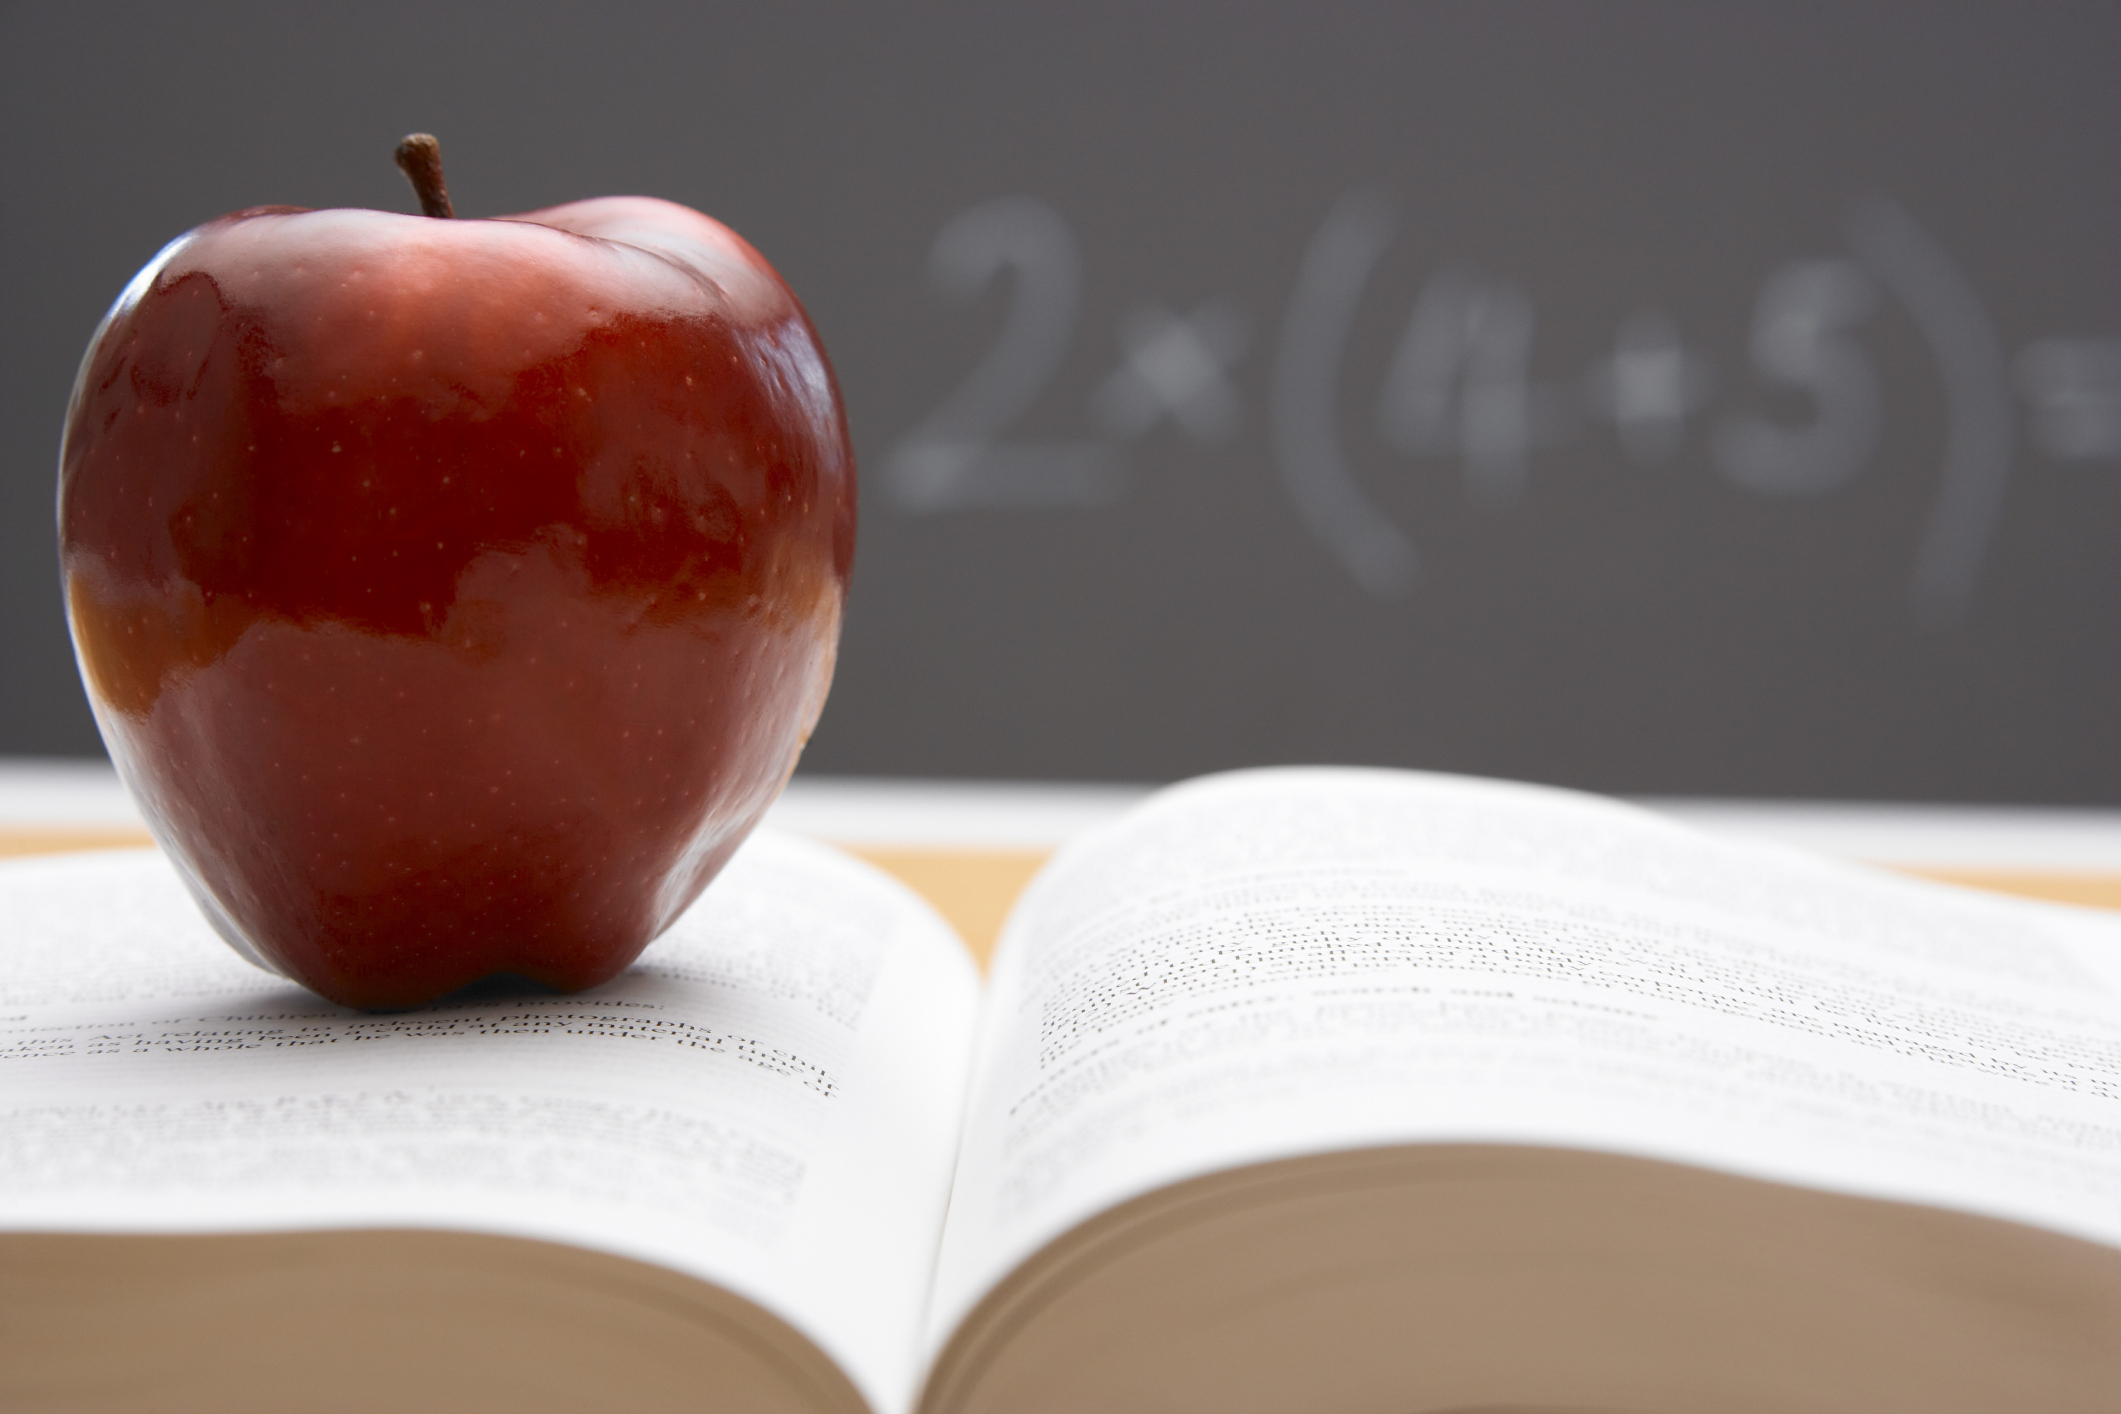 სექტემბრიდან სკოლაში ბავშვებს თითო ვაშლს დავურიგებთ - ჯეჯელავა